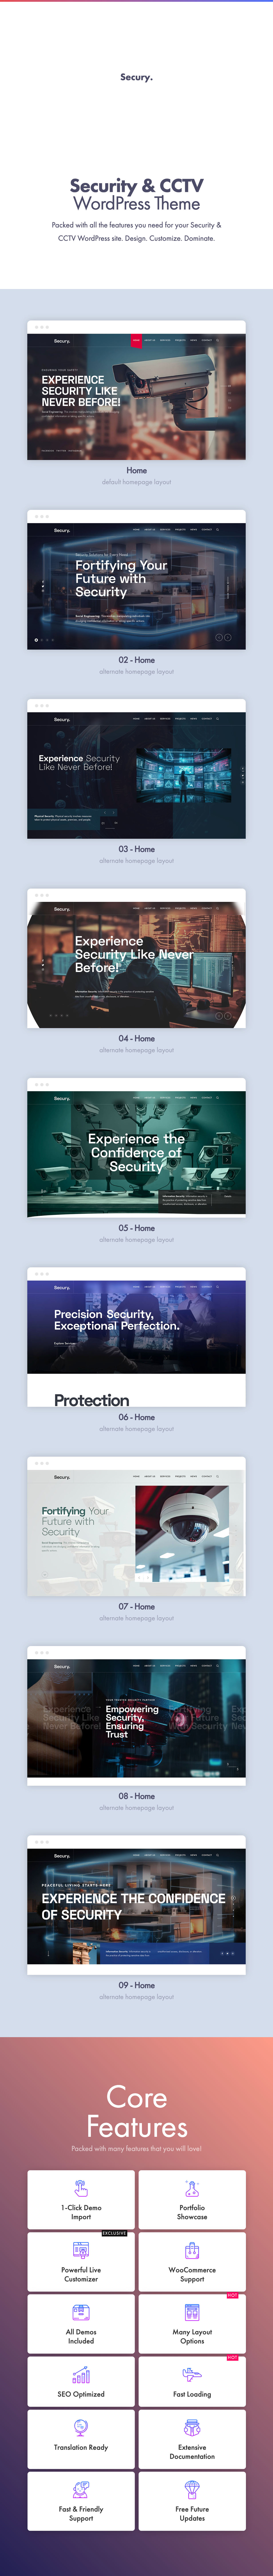 Secury - Security & CCTV wordpress theme by pixelwars 